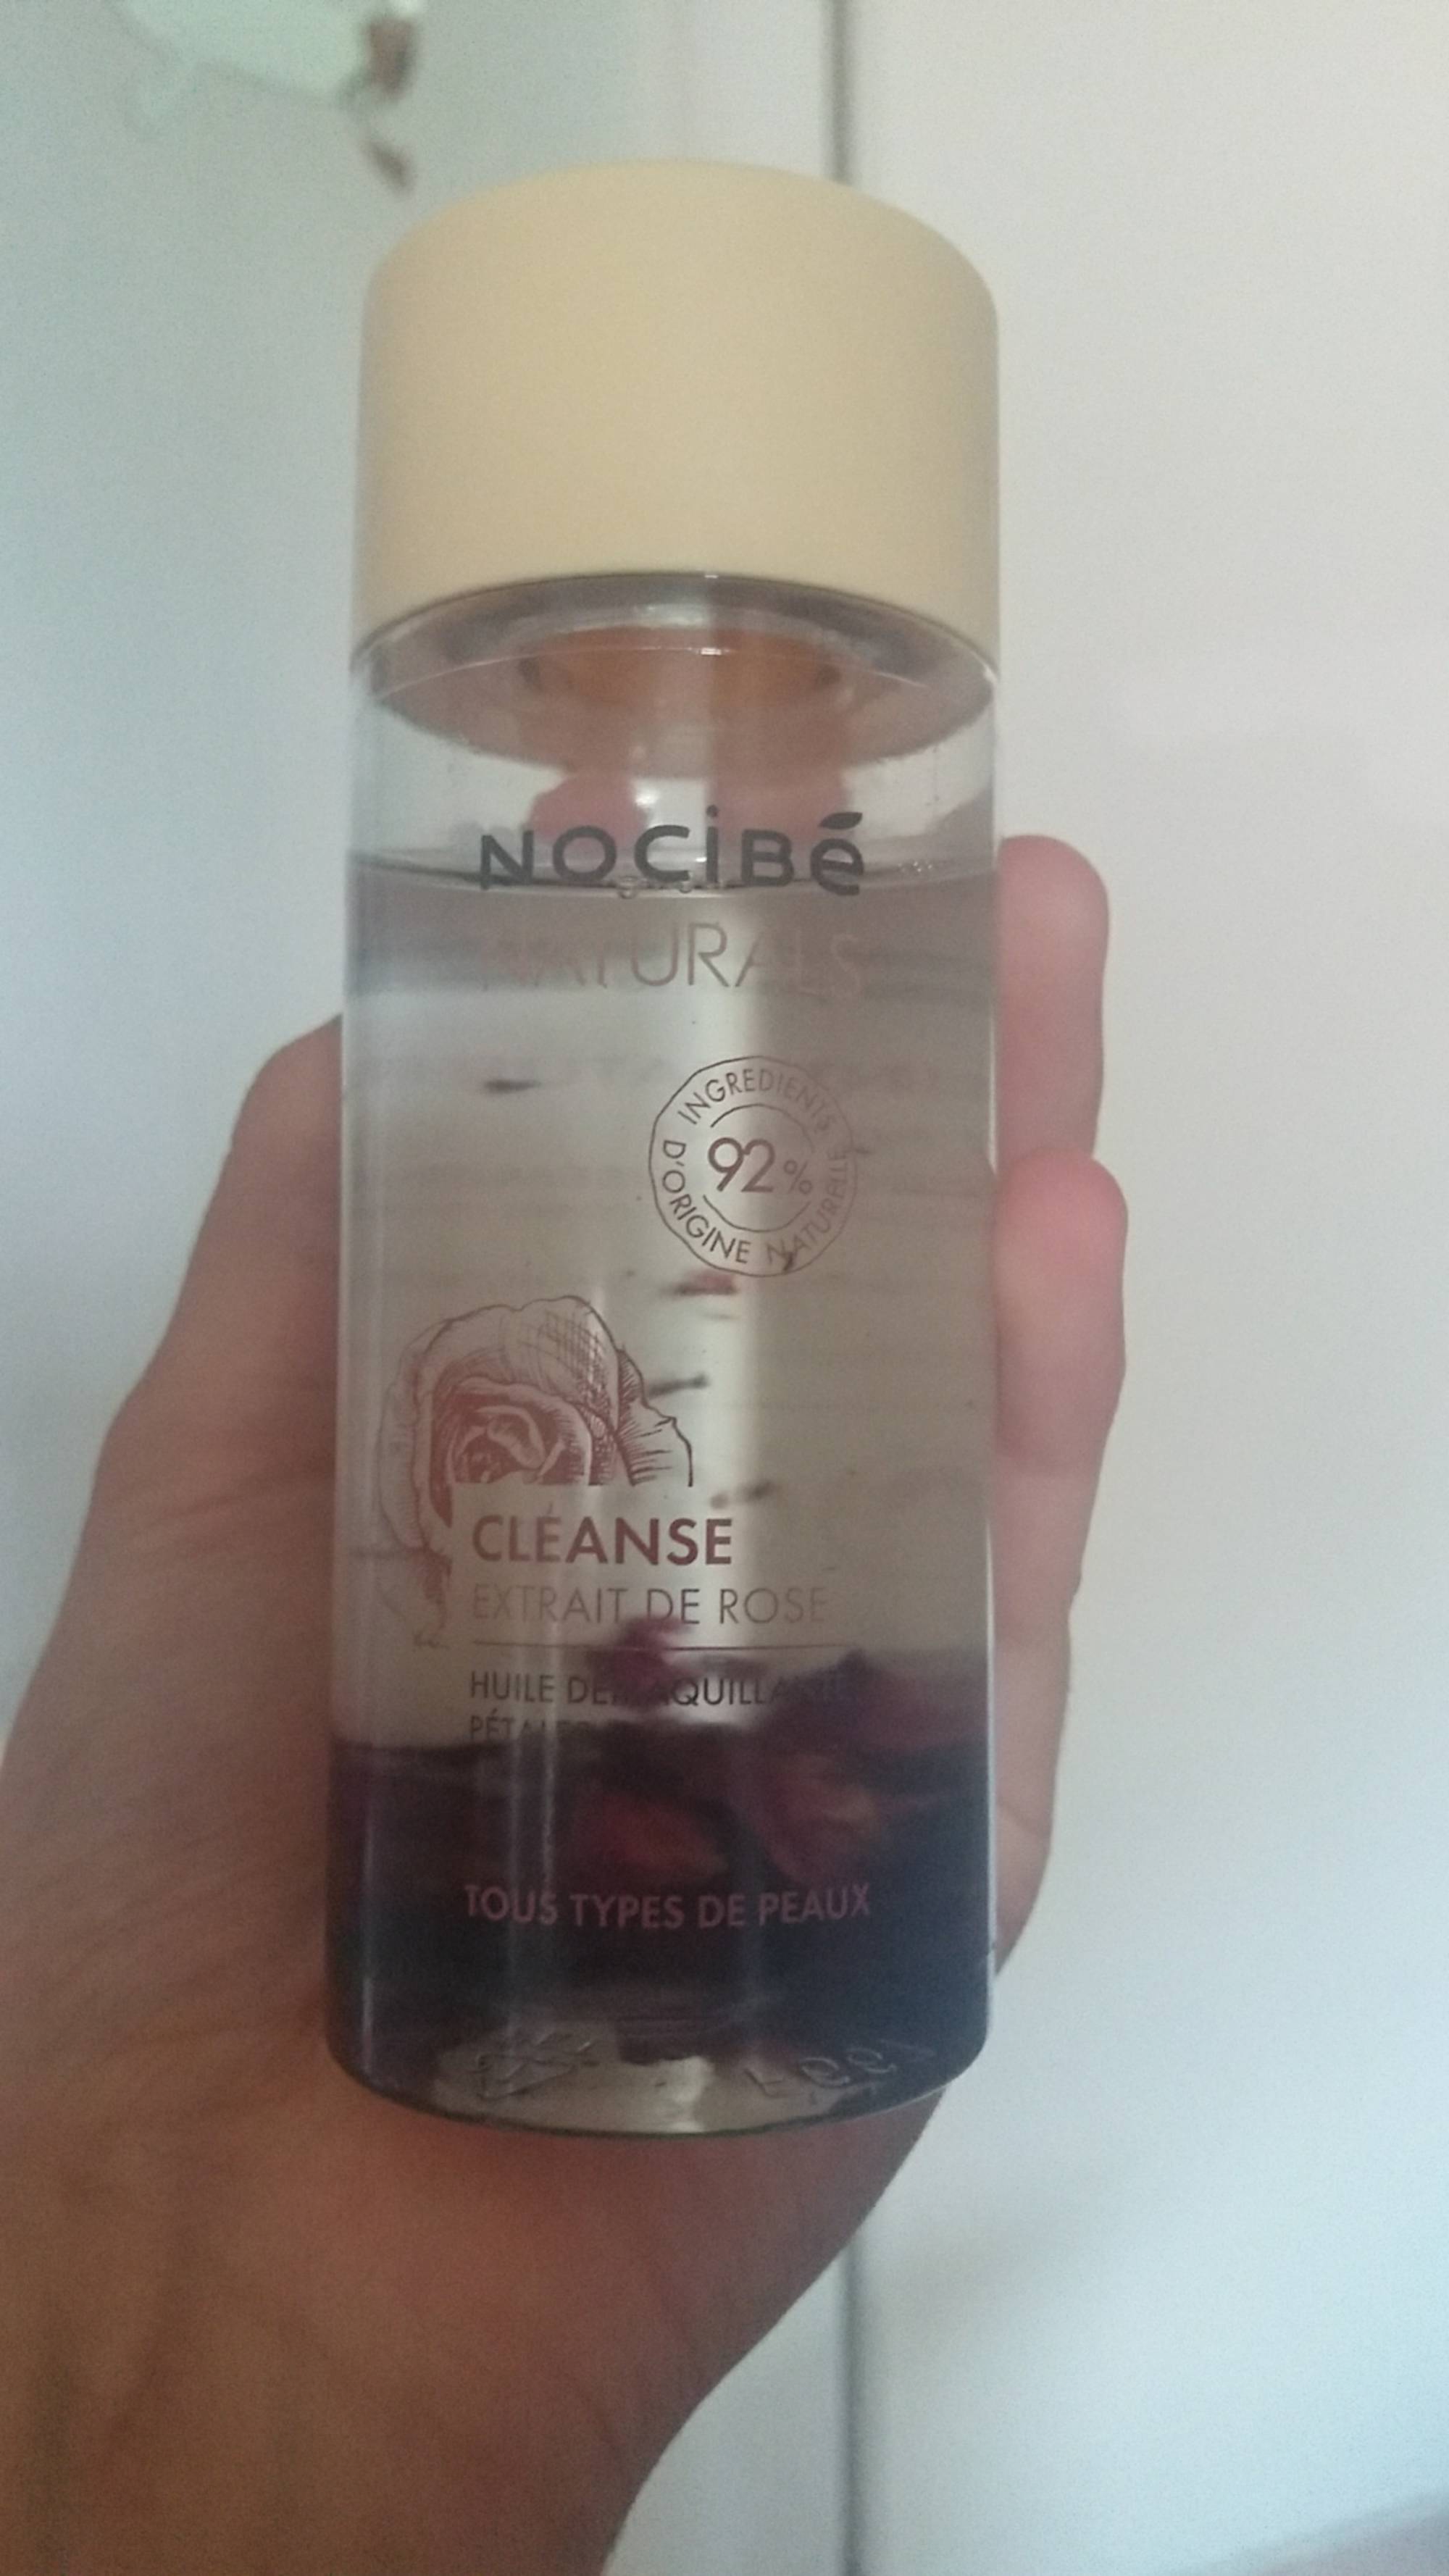 NOCIBÉ - Cleanse extrait de rose - Huile démaquillant pétales